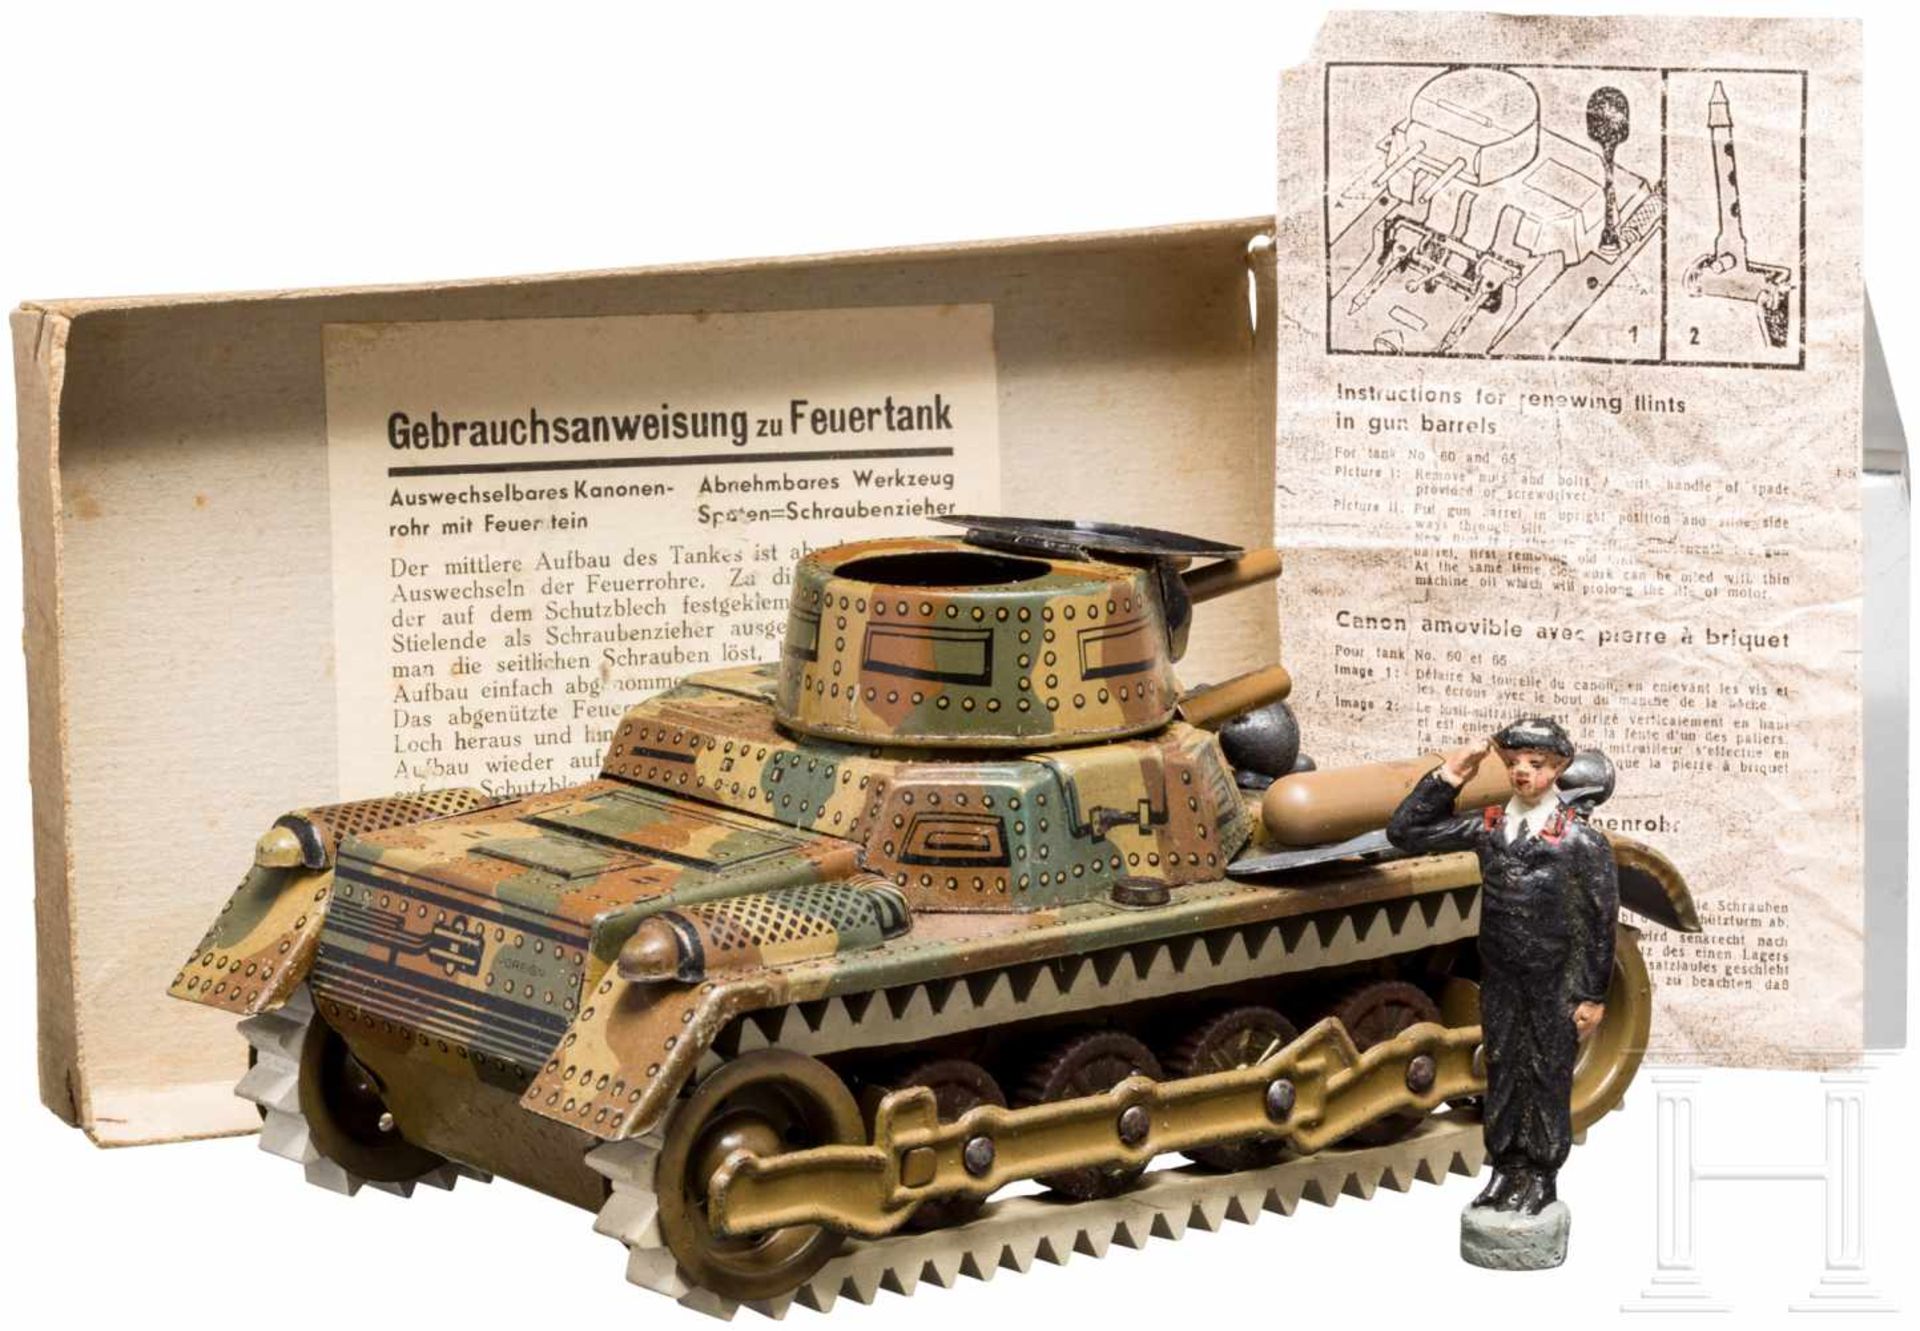 Gama - Panzer Feuertank No 60, im OriginalkartonGama/Georg Adam Mangold, Fürth, 7 cm-Serie, Blech- - Bild 2 aus 3